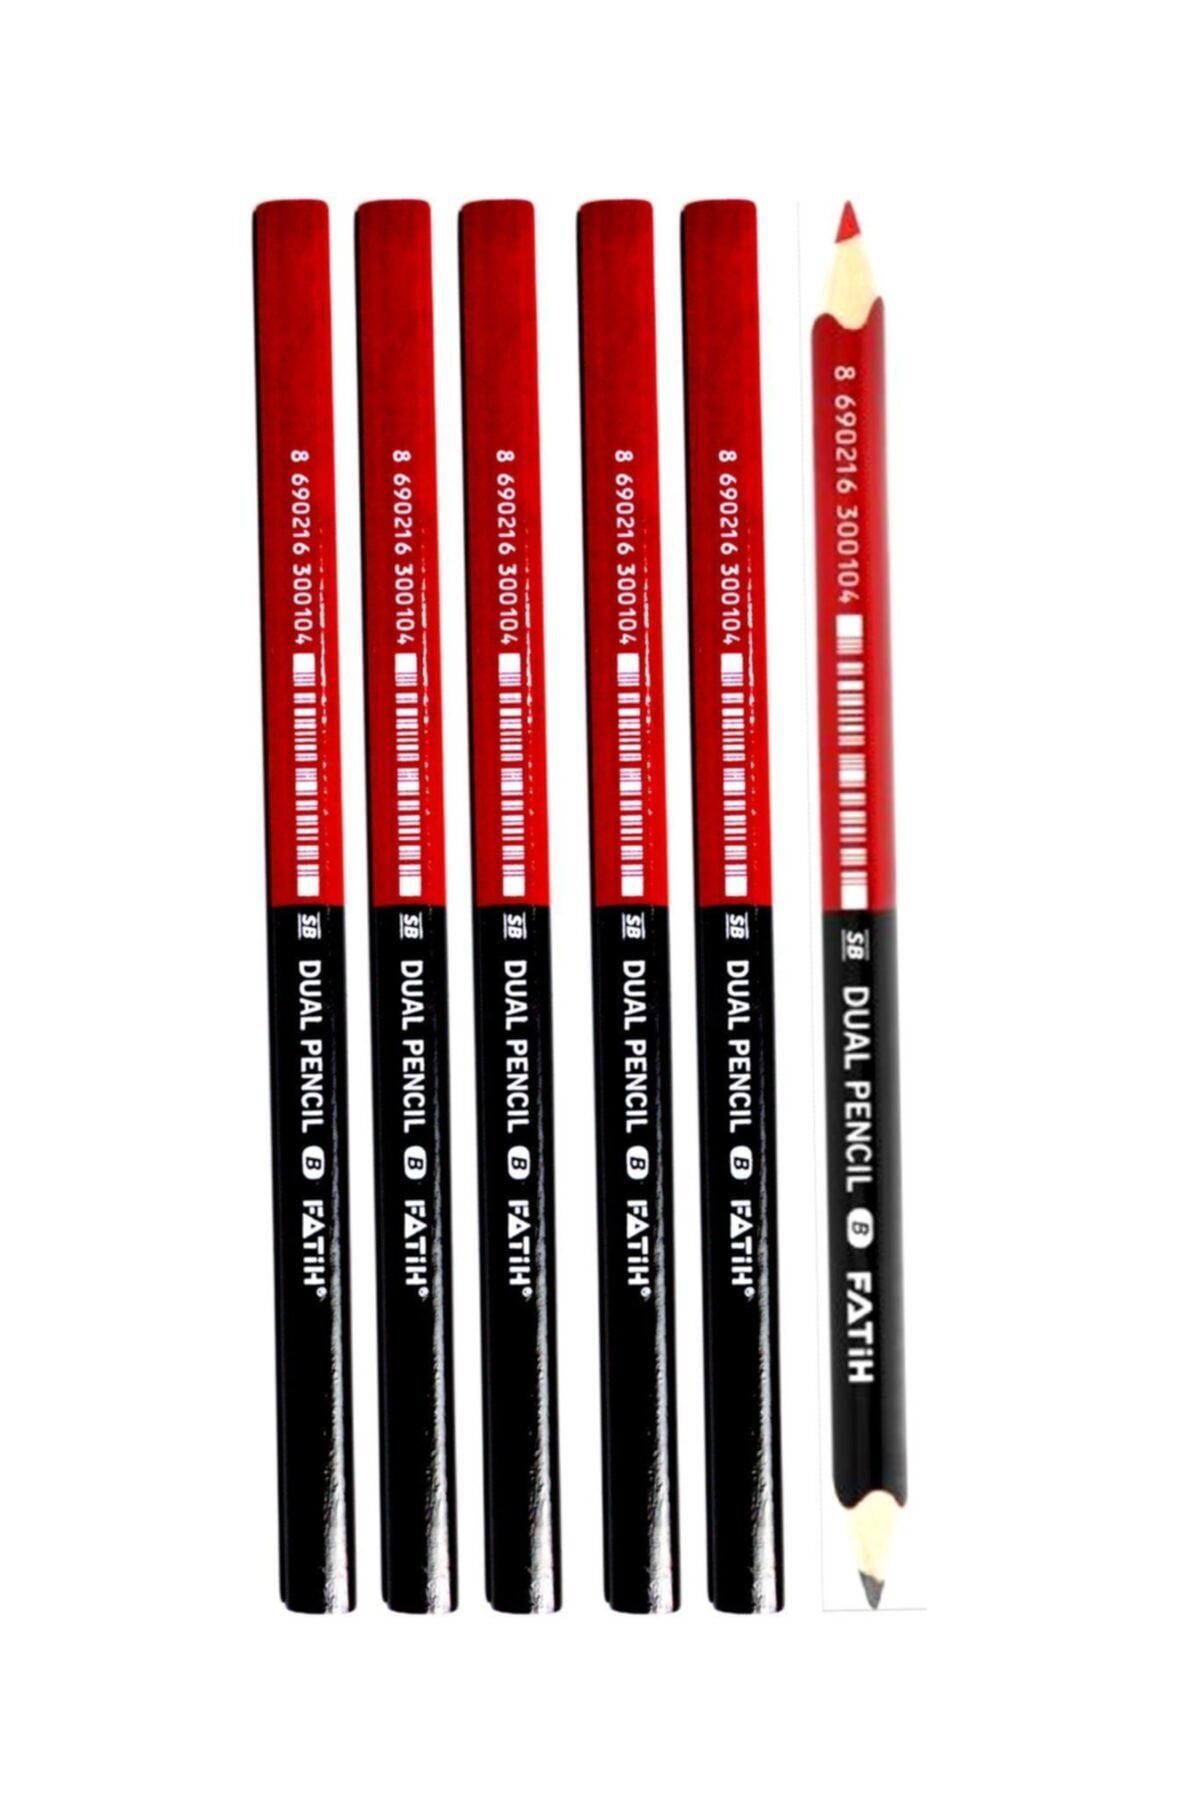 Fatih Ilk Kalemim Üçgen Jumbo Dual Çift Uçlu Kırmızı Siyah 6 Lı